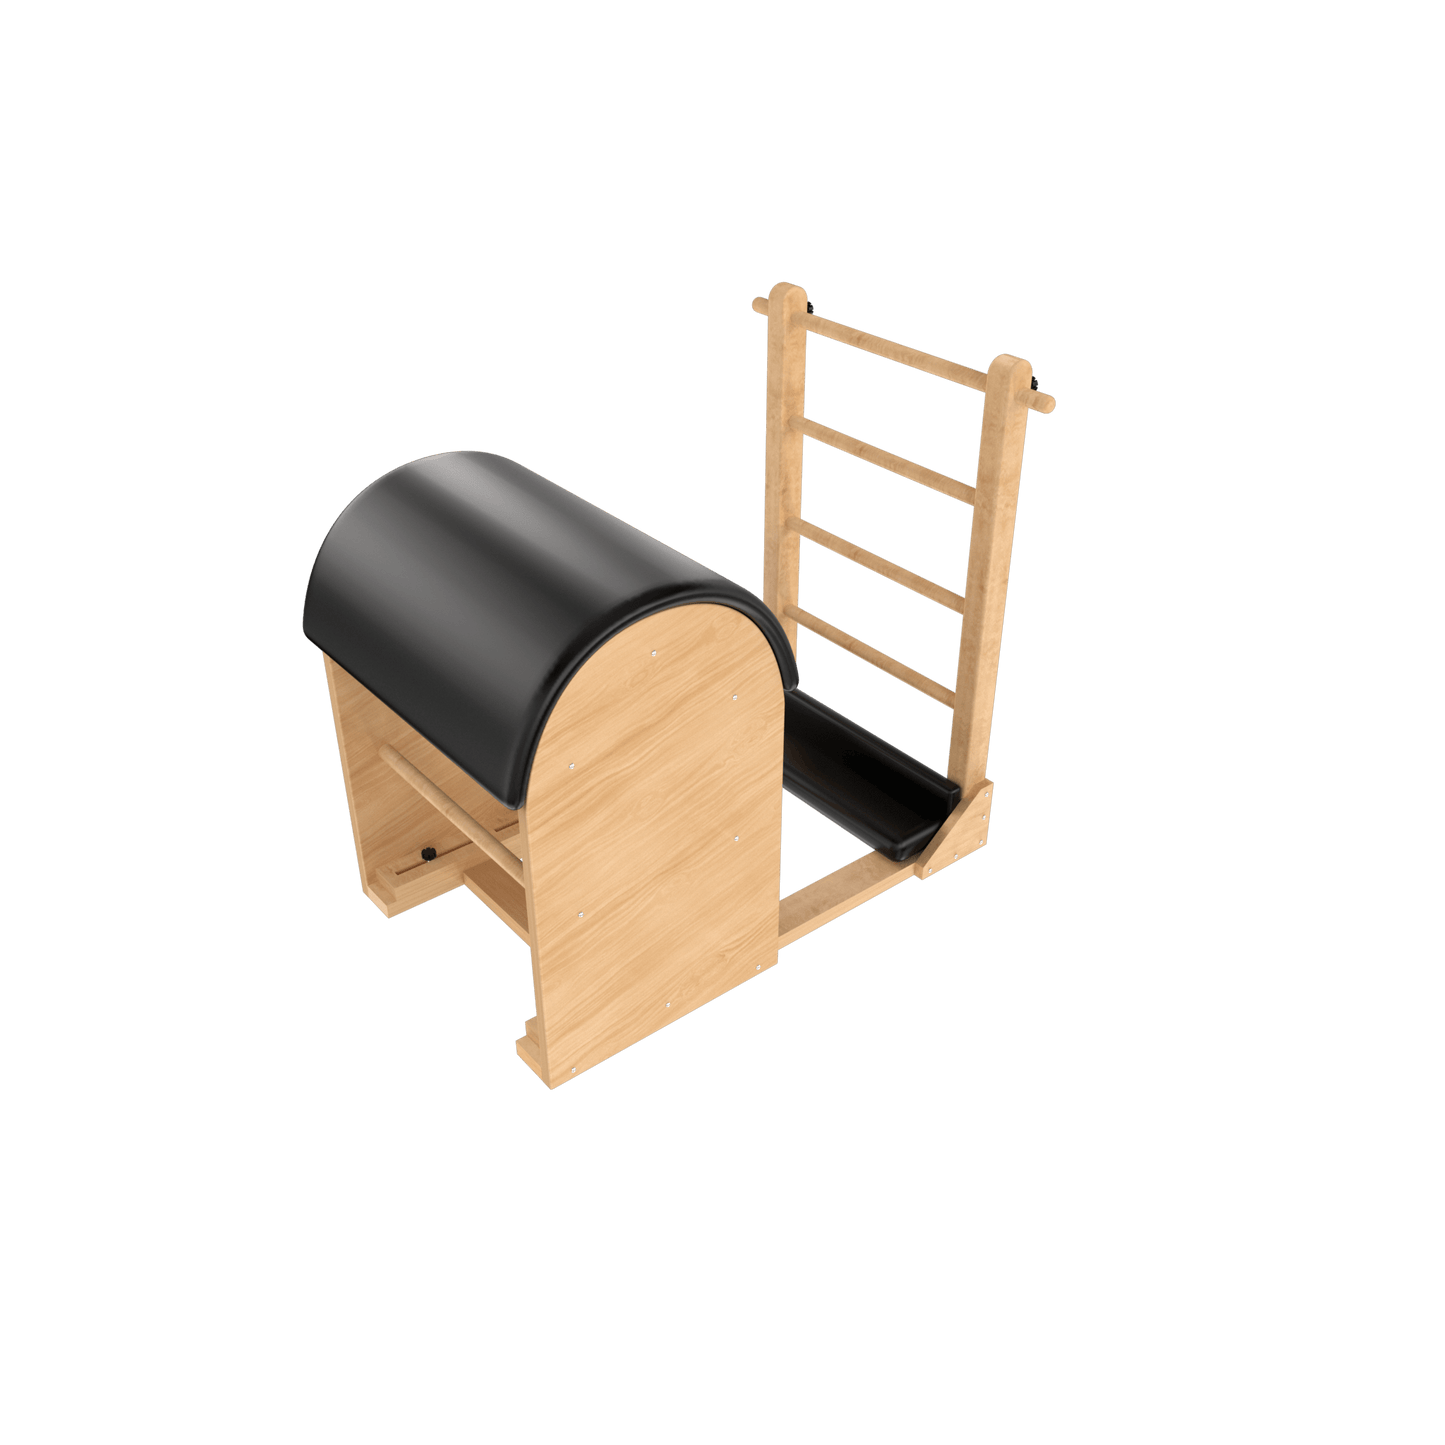 Ladder Barrel - Function